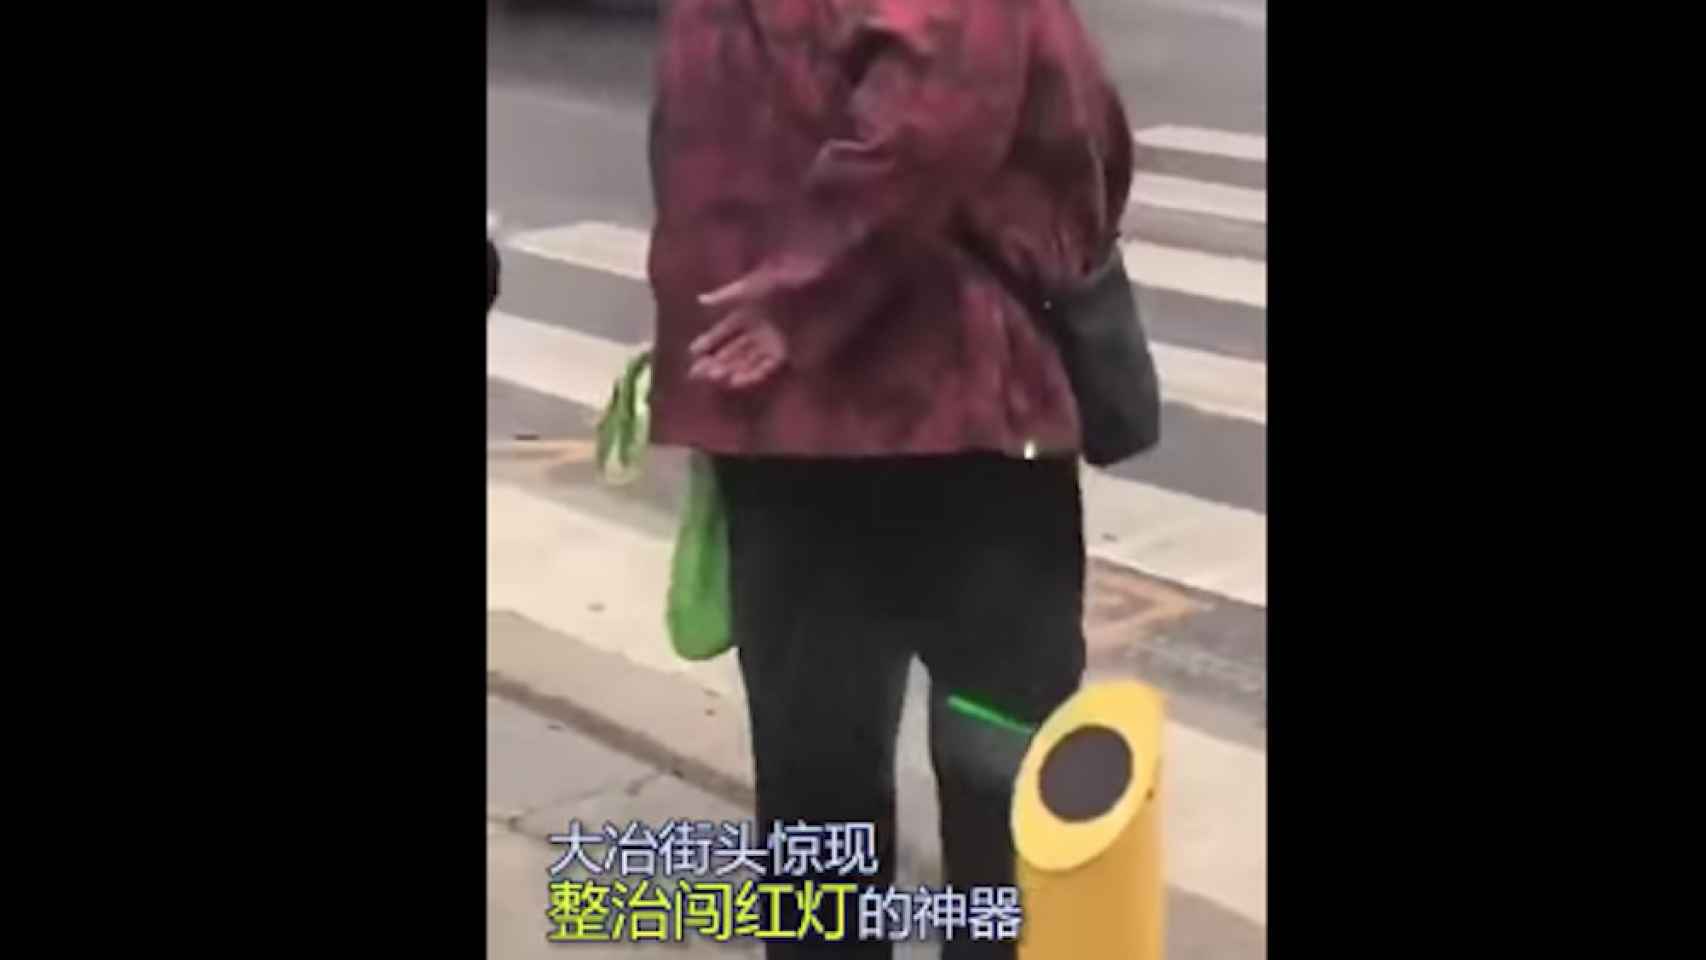 Una foto de una mujer mojándose con el chorro de agua por intentar pasar en rojo